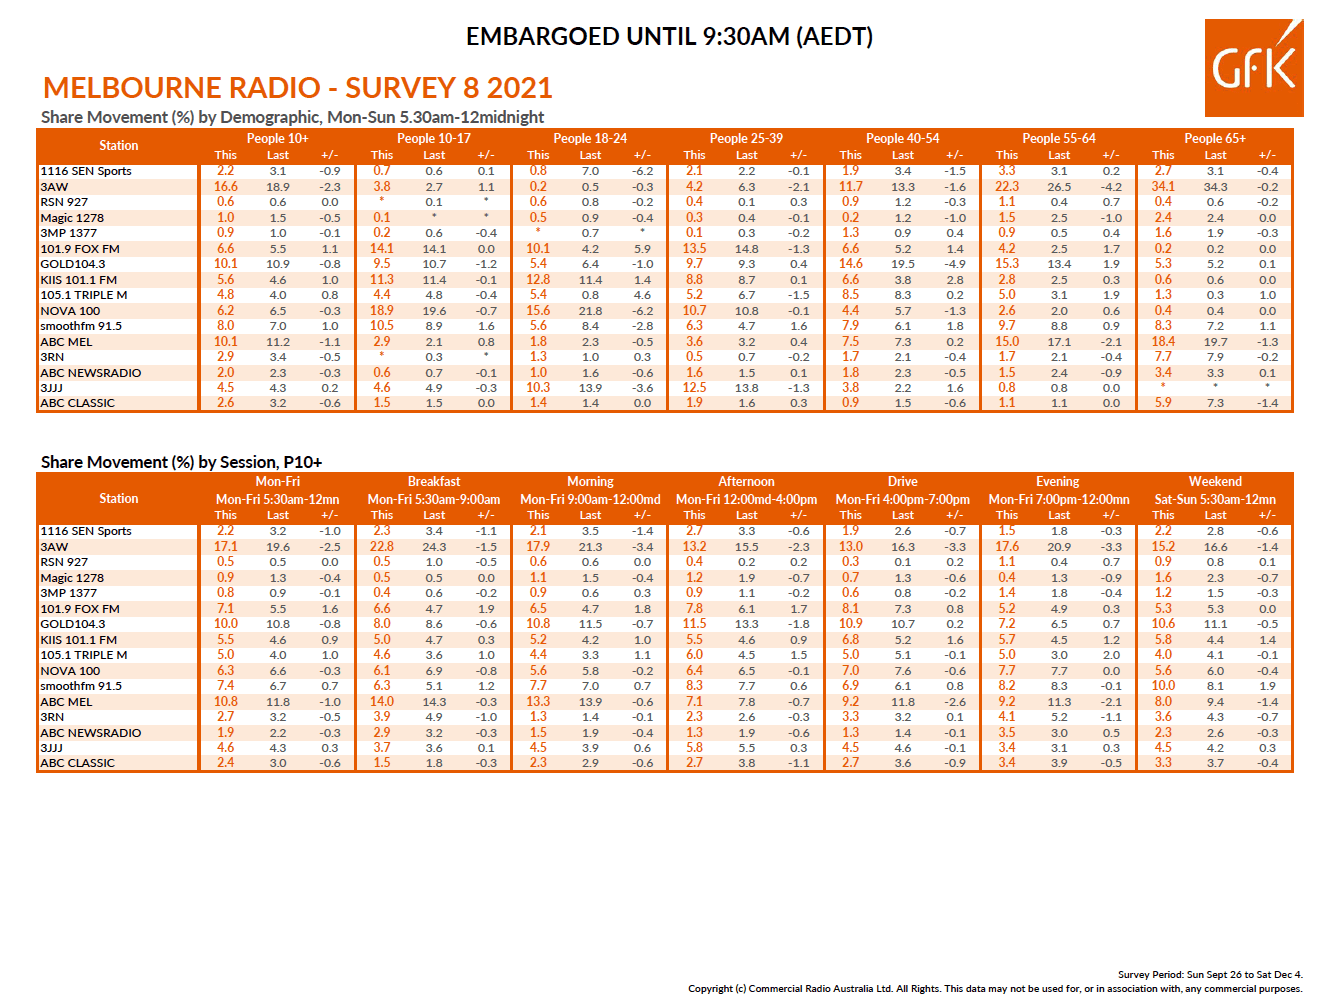 Melbourne GFK Survey 8 Ratings